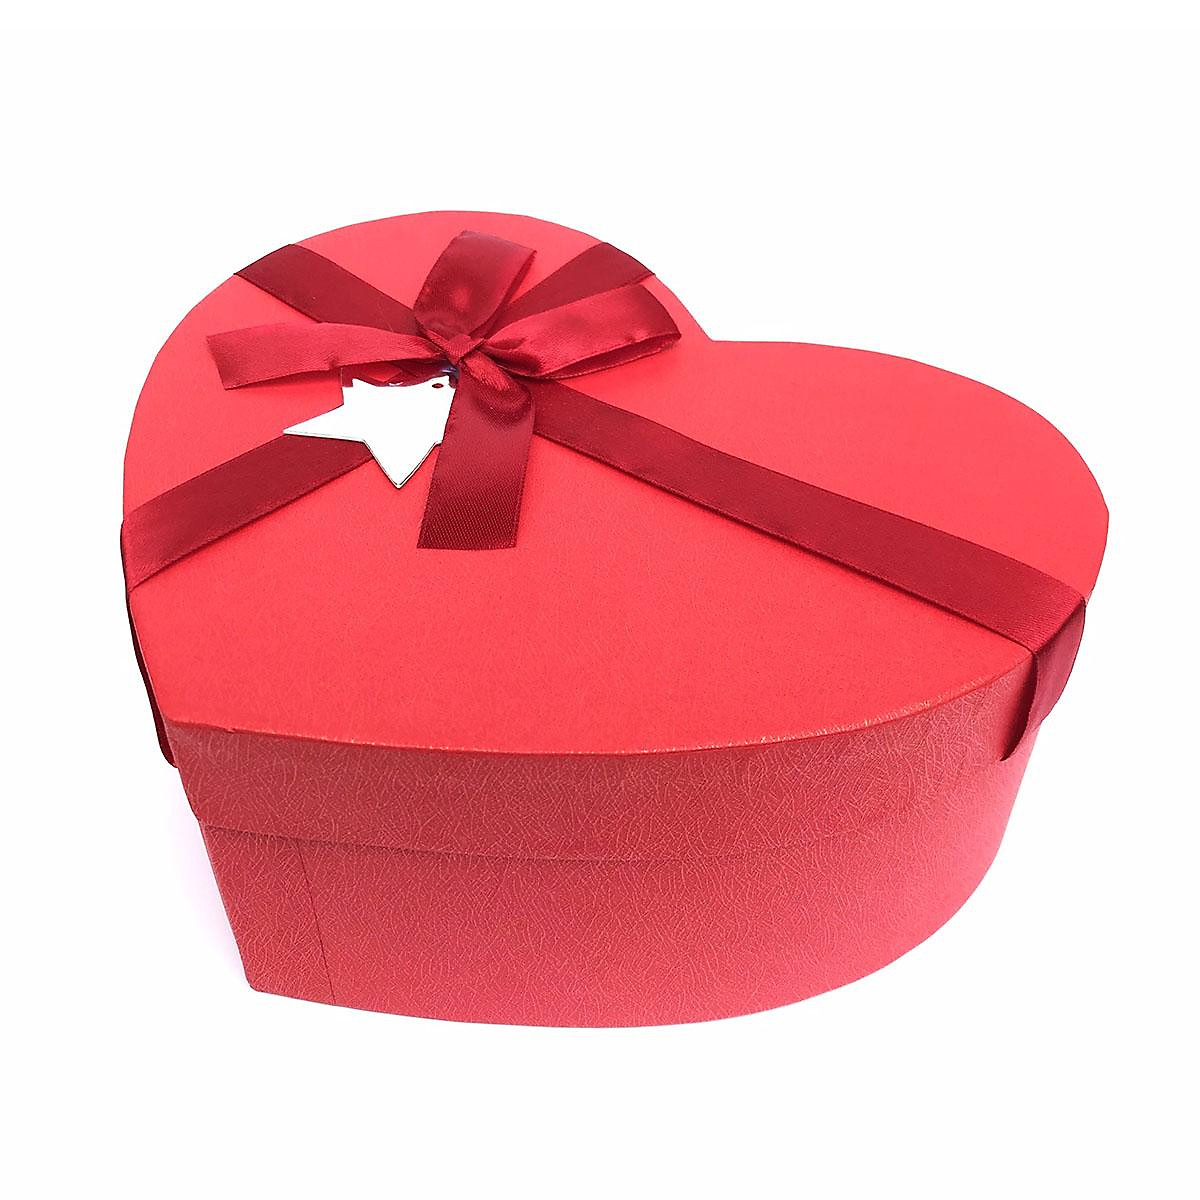 Hộp quà tặng hình trái tim đỏ là một món quà thật tuyệt vời cho người mà bạn yêu. Bạn có thể bày tỏ tình cảm của mình bằng cách tặng cho họ món quà đầy ý nghĩa này, để họ luôn nhớ về tình yêu bạn dành cho họ.